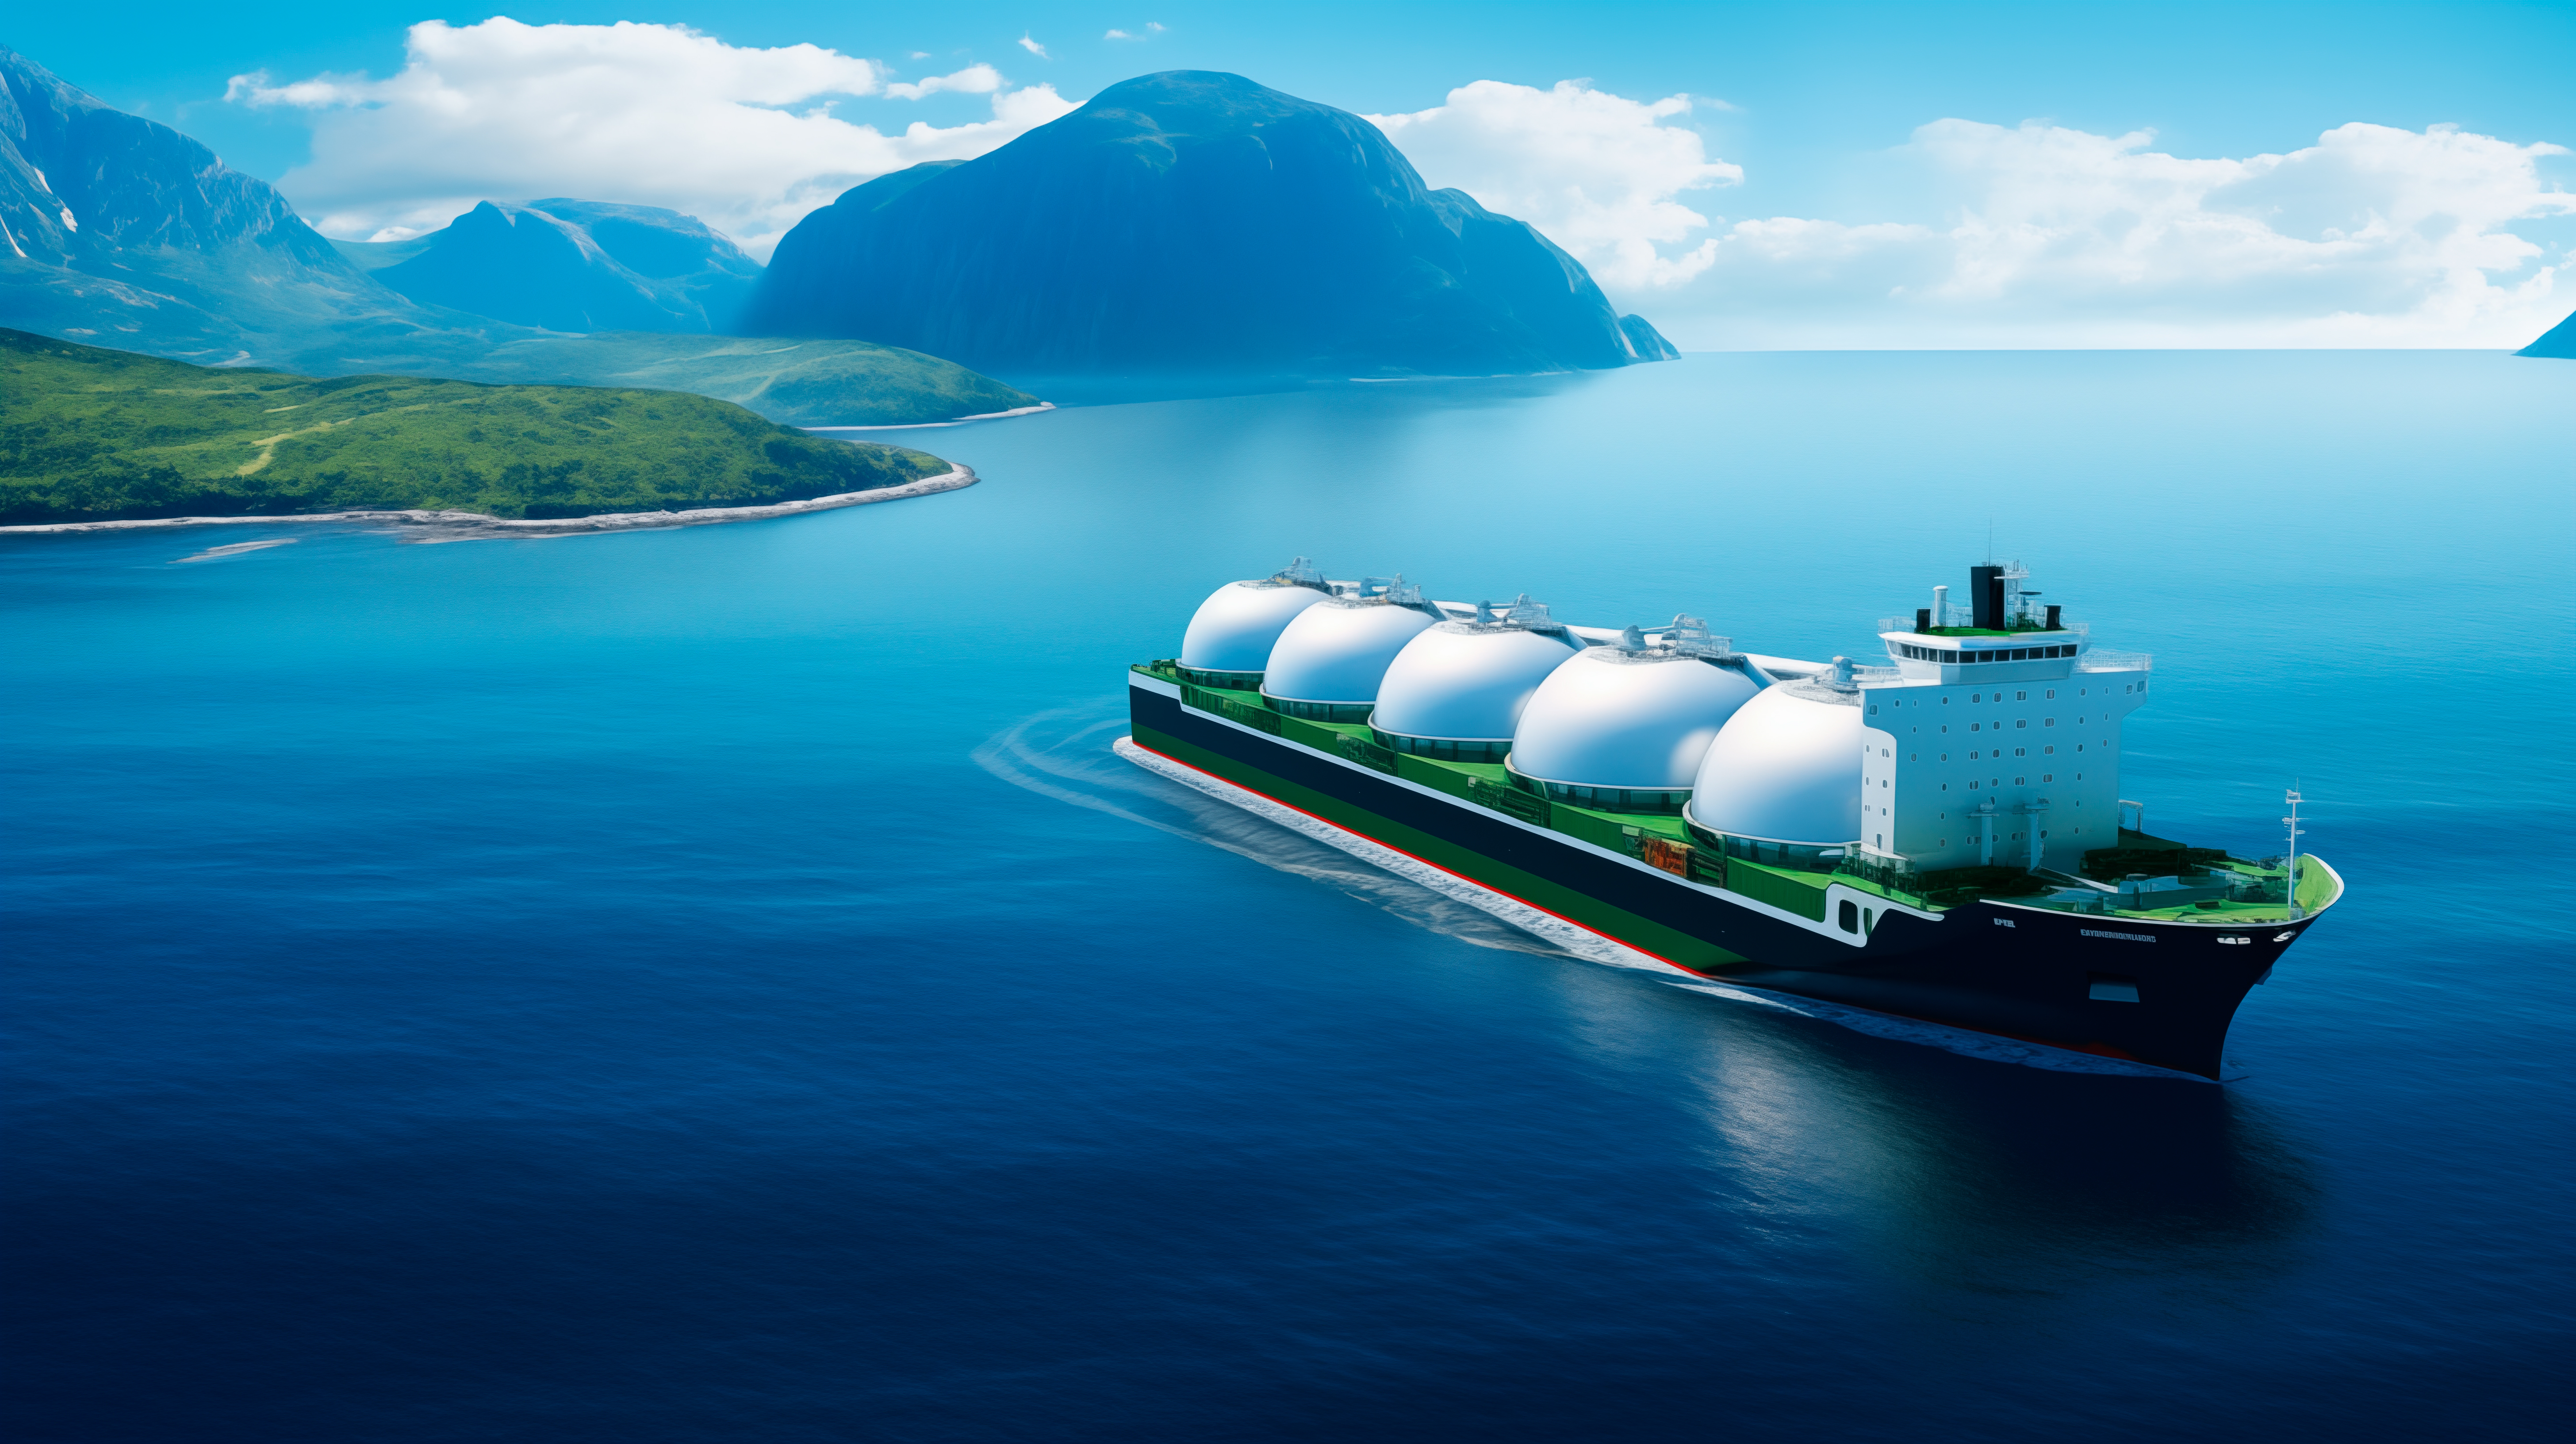 Das Bild zeigt einen LNG Tanker vor grüner Insel auf ruhiger See ane einem sonnigen Tag